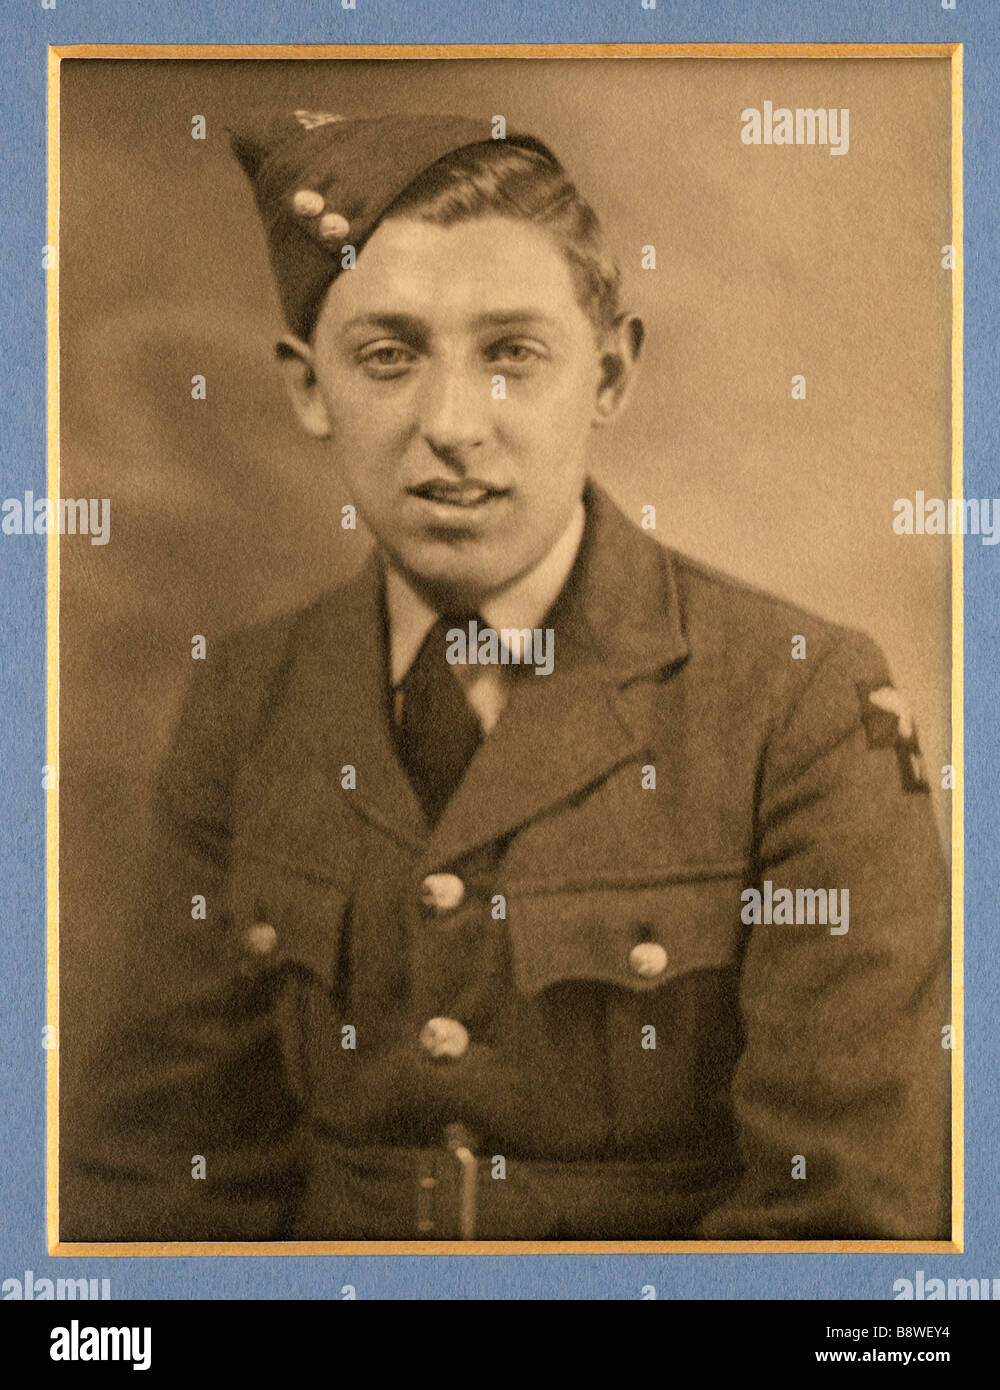 Jeune homme dans un uniforme de la Royal Air Force pendant la Seconde Guerre mondiale en 1939 Banque D'Images